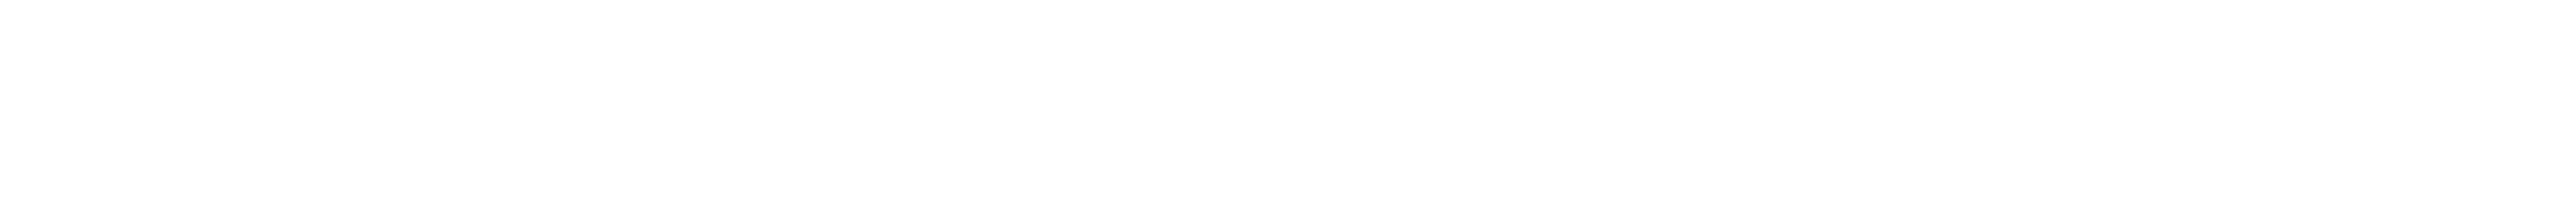 litechaser-logo